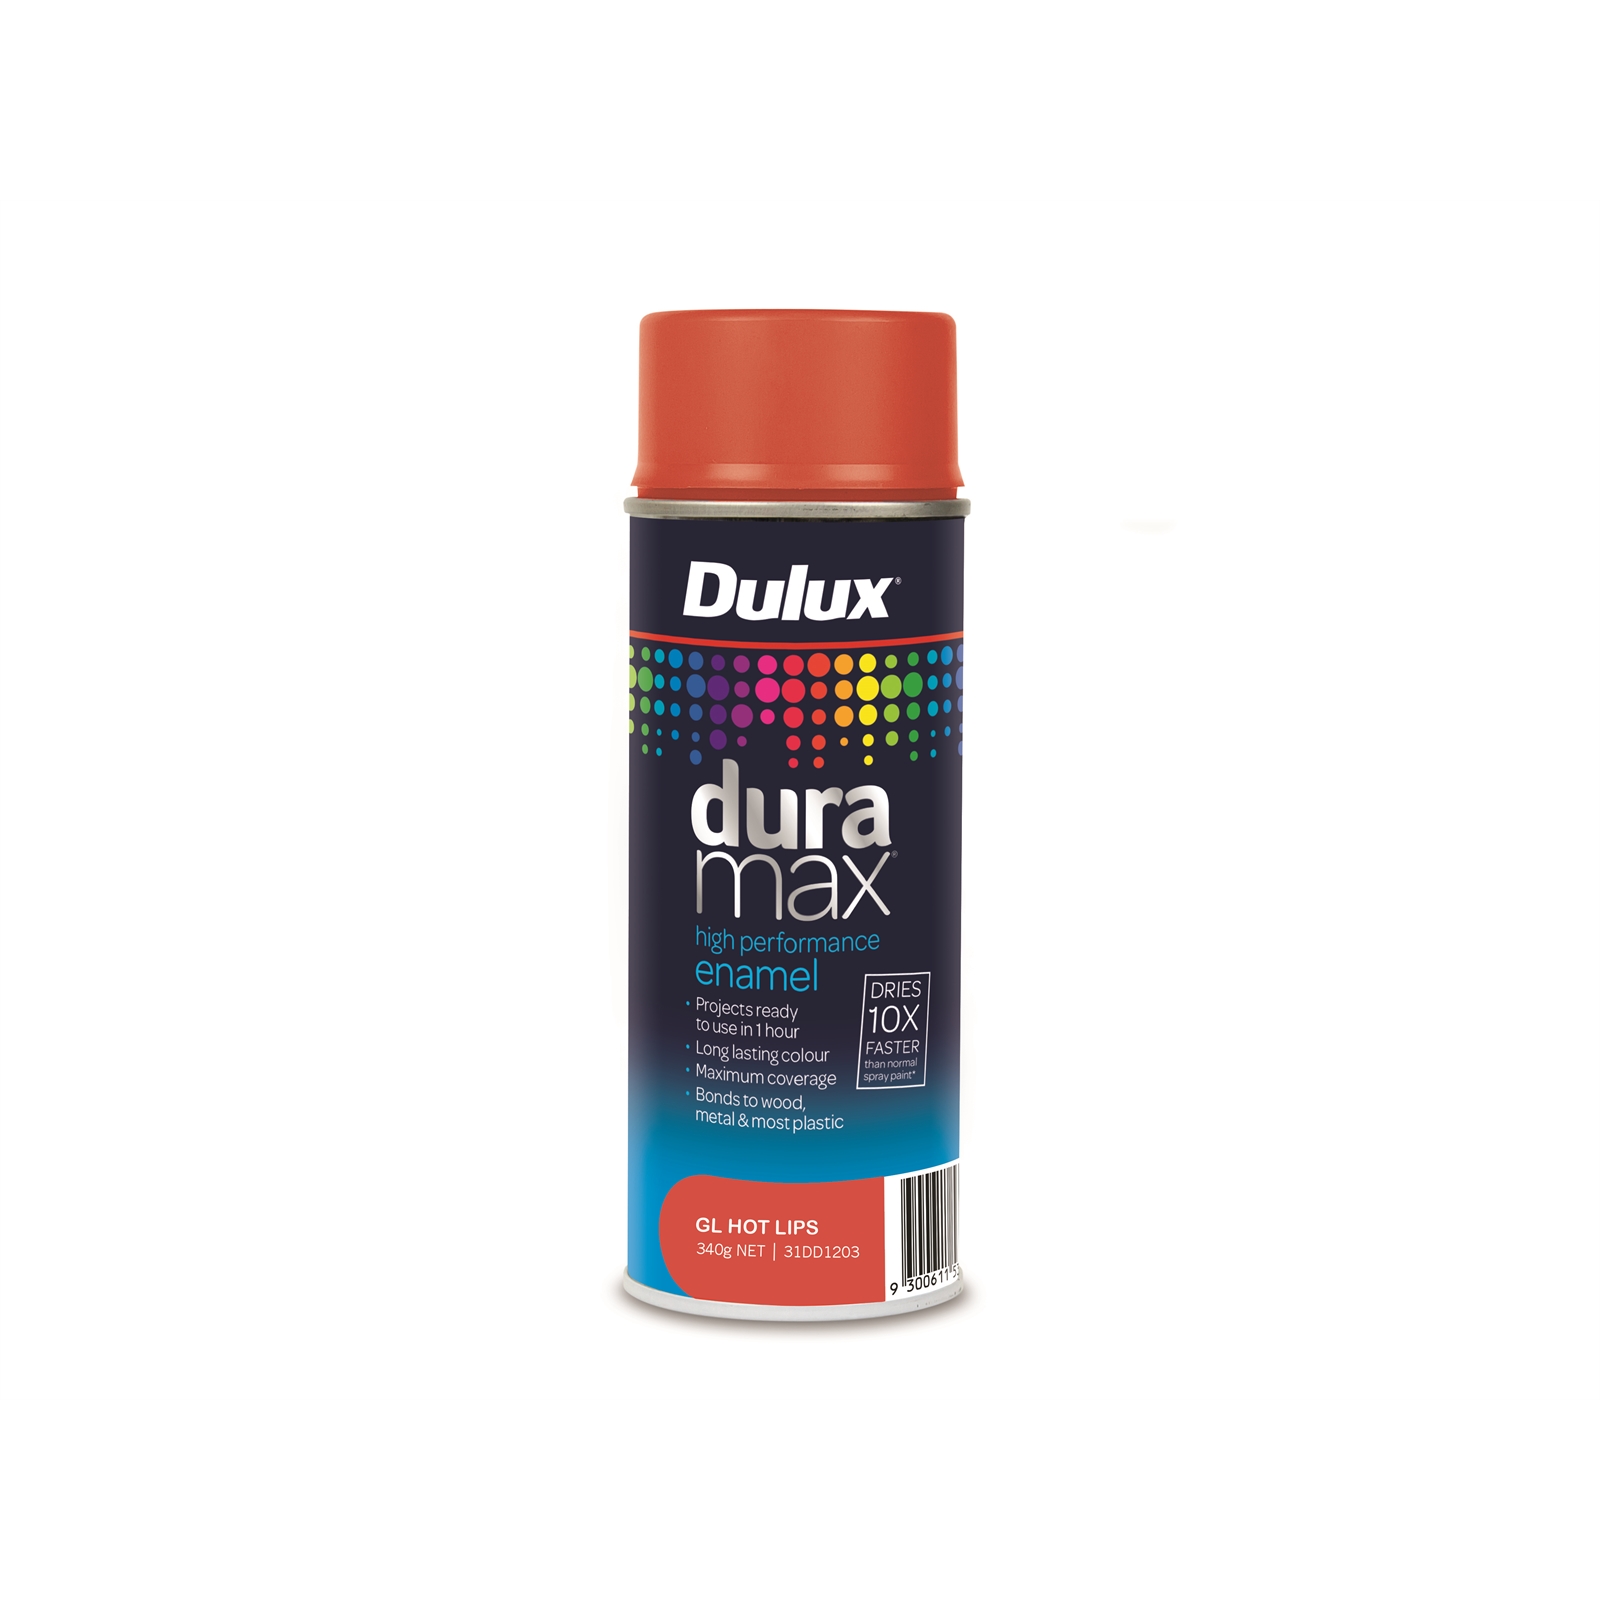 Dulux Duramax 340g Gloss Hot Lips Spray Paint